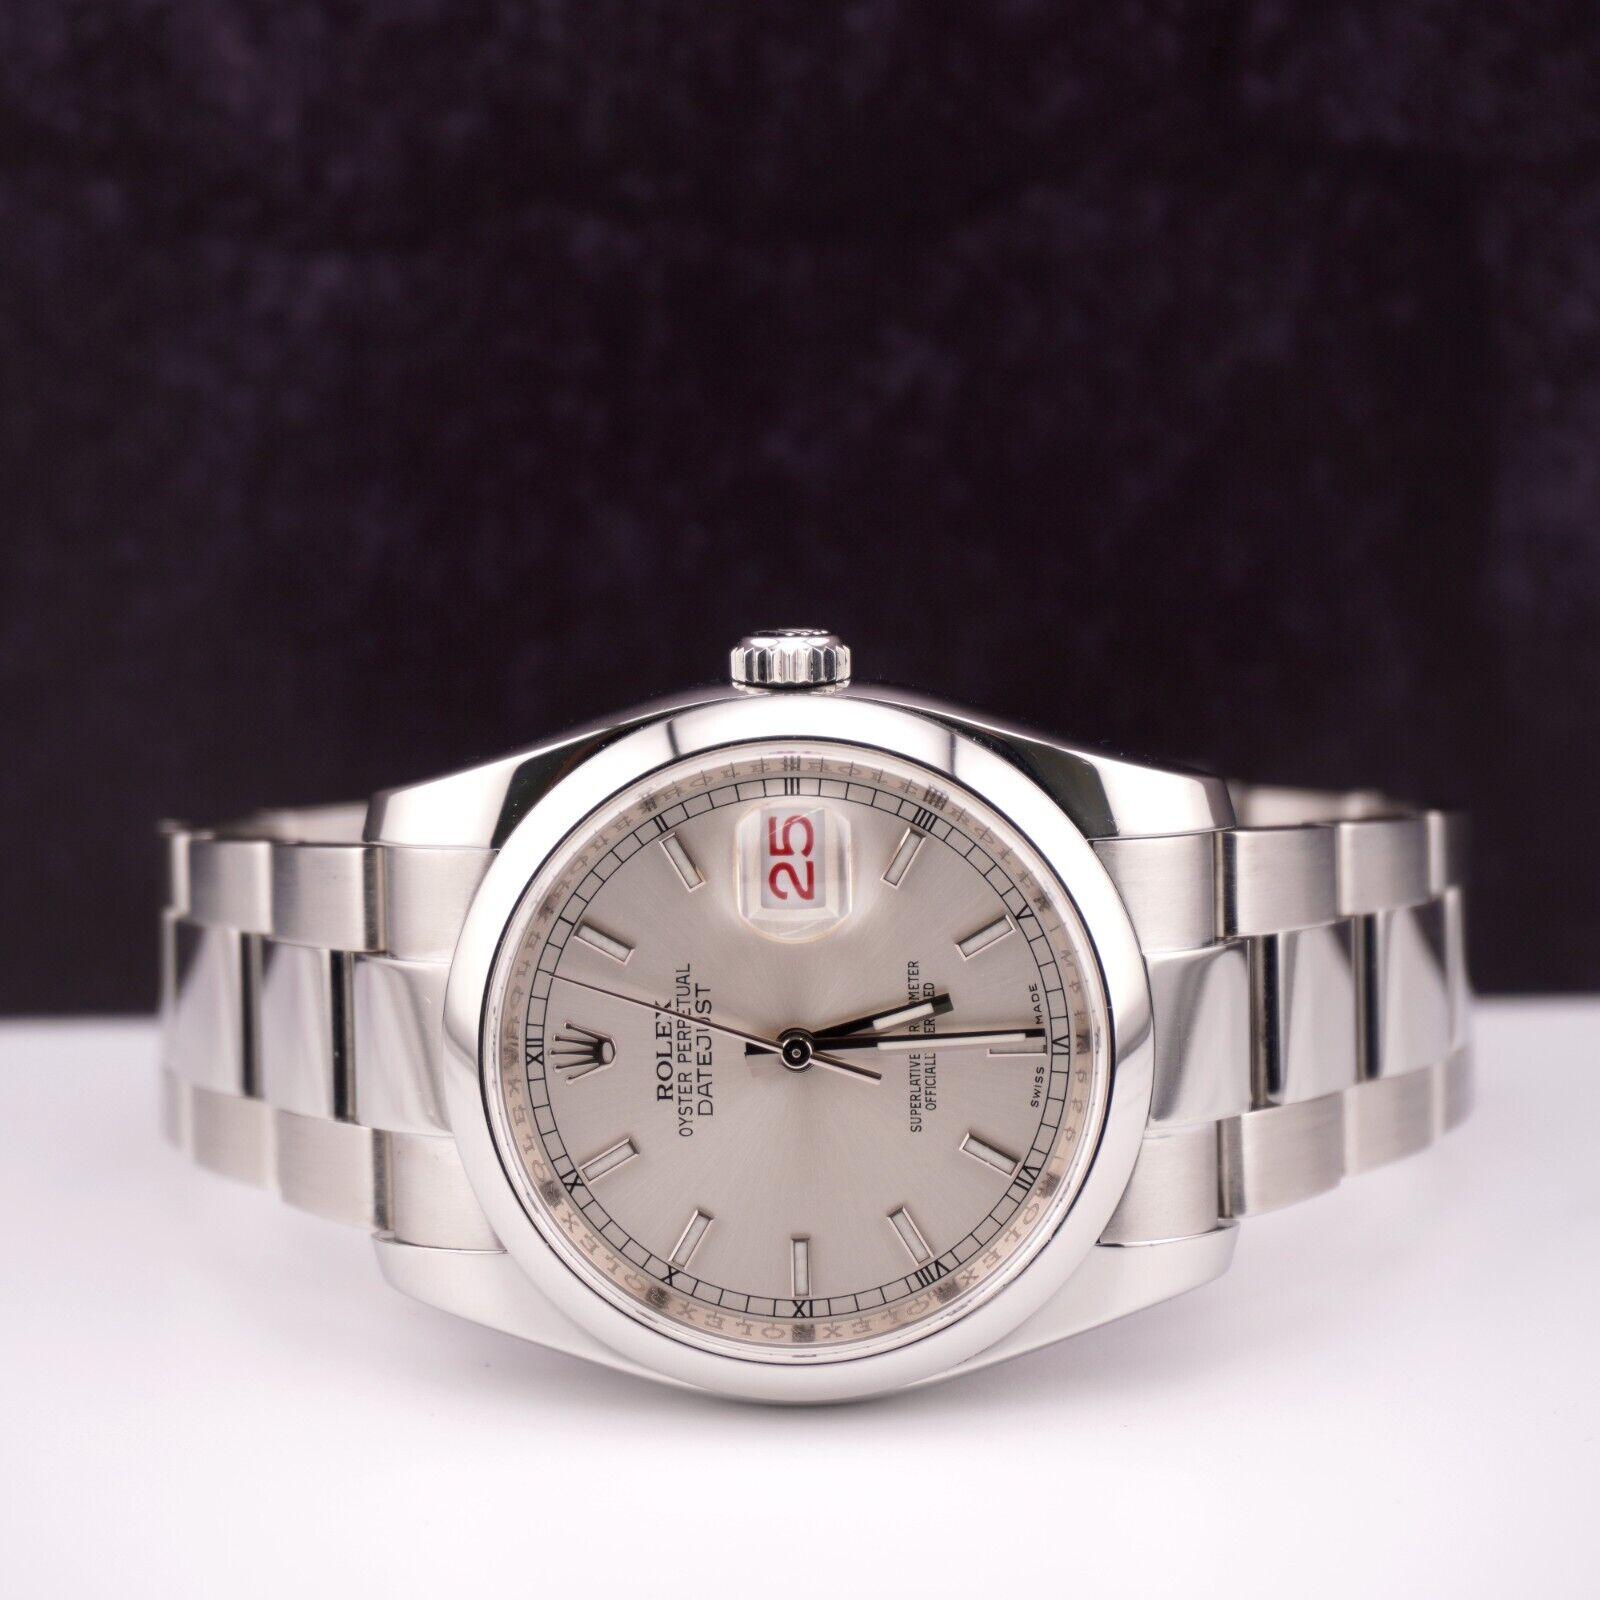 Rolex Datejust 36mm Uhr

Gebraucht mit Original Box & Karte
100% authentische Echtheitskarte
Zustand - (Ausgezeichneter Zustand) - Siehe Bilder
Referenz der Uhr - 116200
Modell - Datejust
Zifferblattfarbe - Silber
MATERIAL - Rostfreier Stahl
Uhr